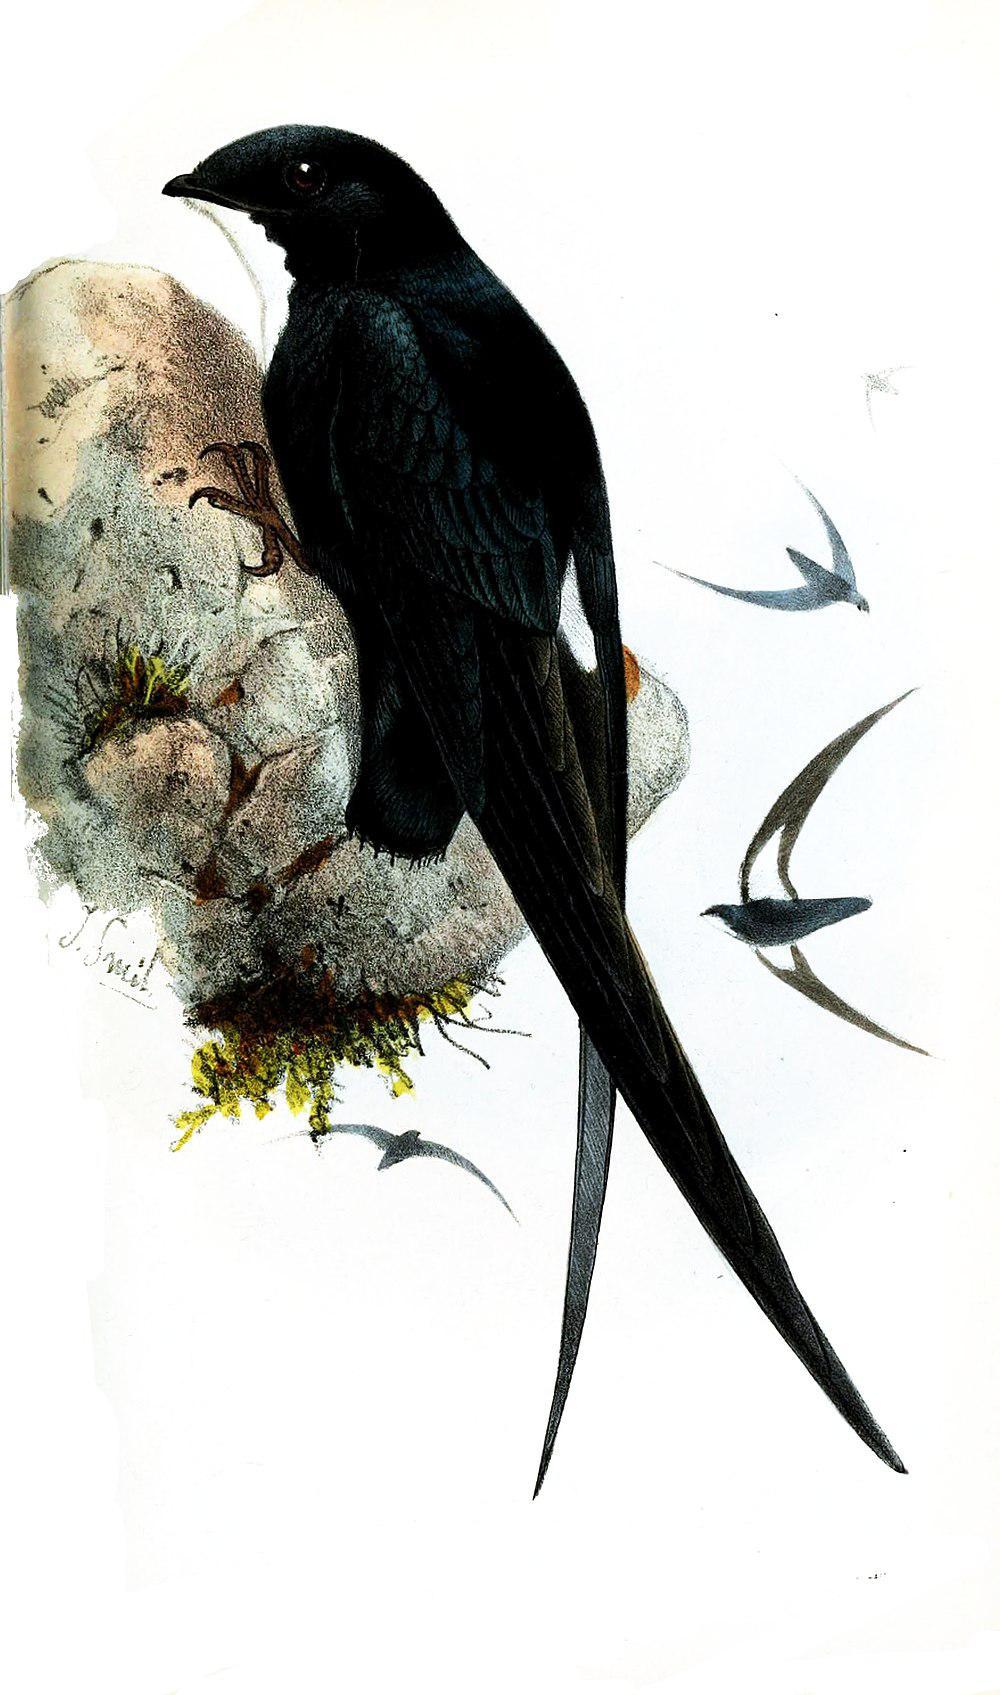 菲律宾针尾雨燕 / Philippine Spine-tailed Swift / Mearnsia picina